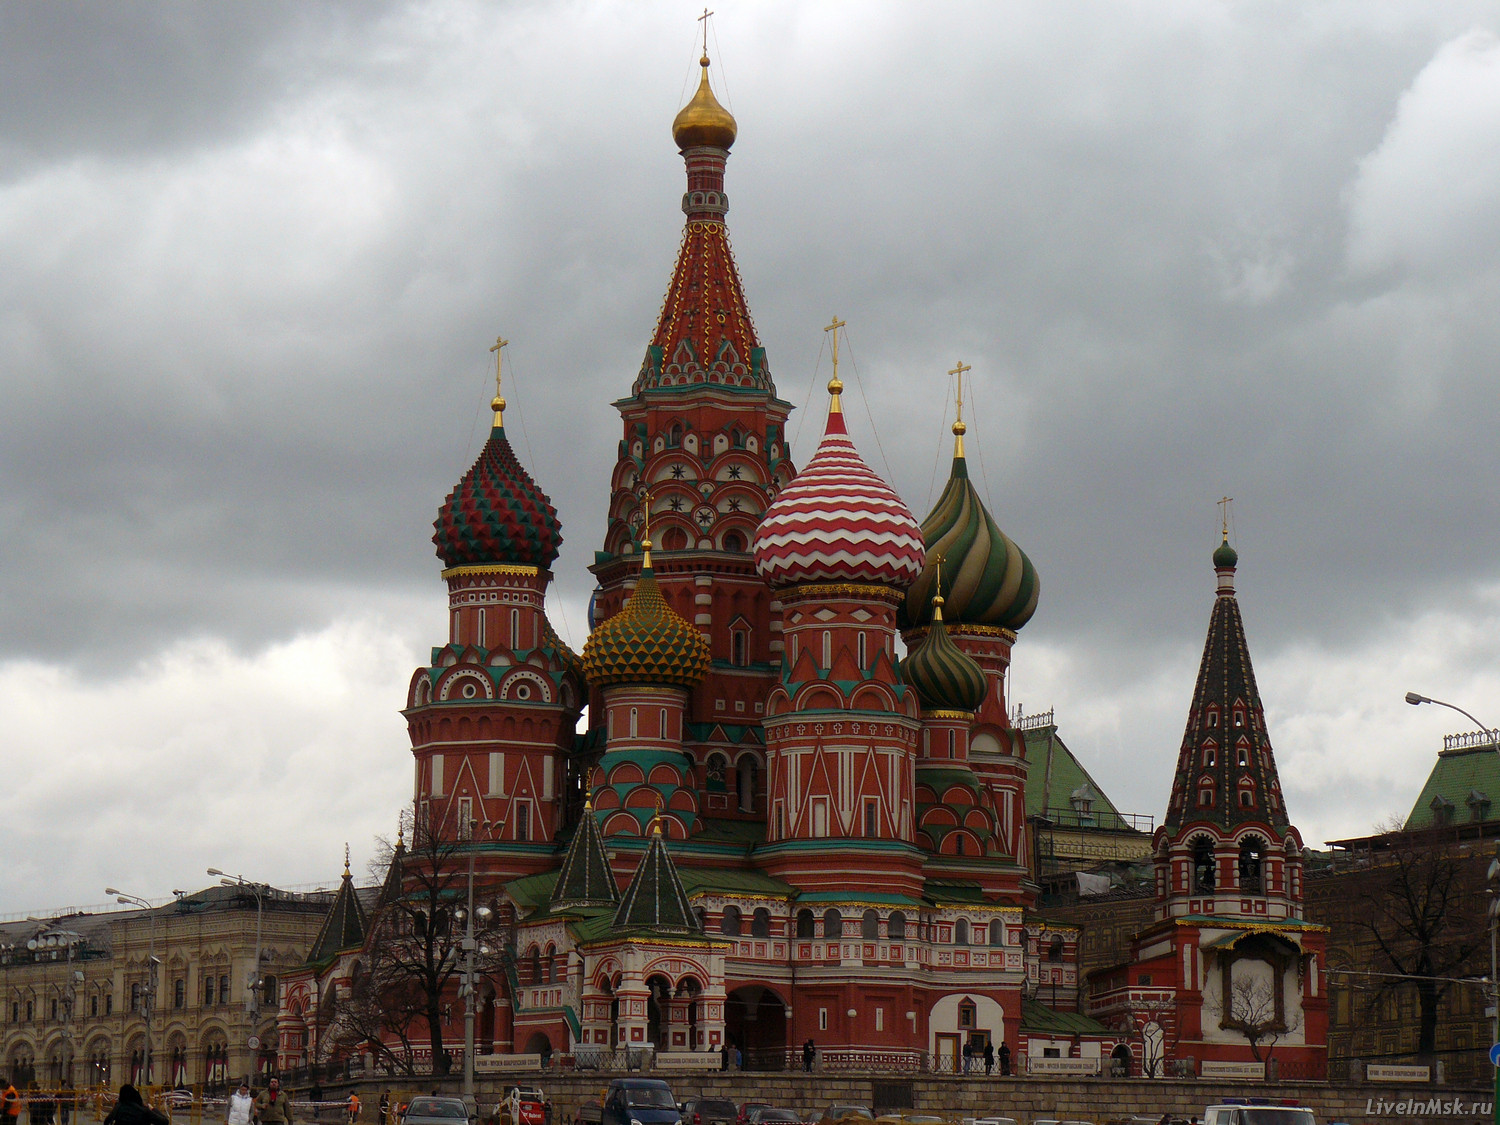 Покровский собор на Красной площади, фото 2014 года